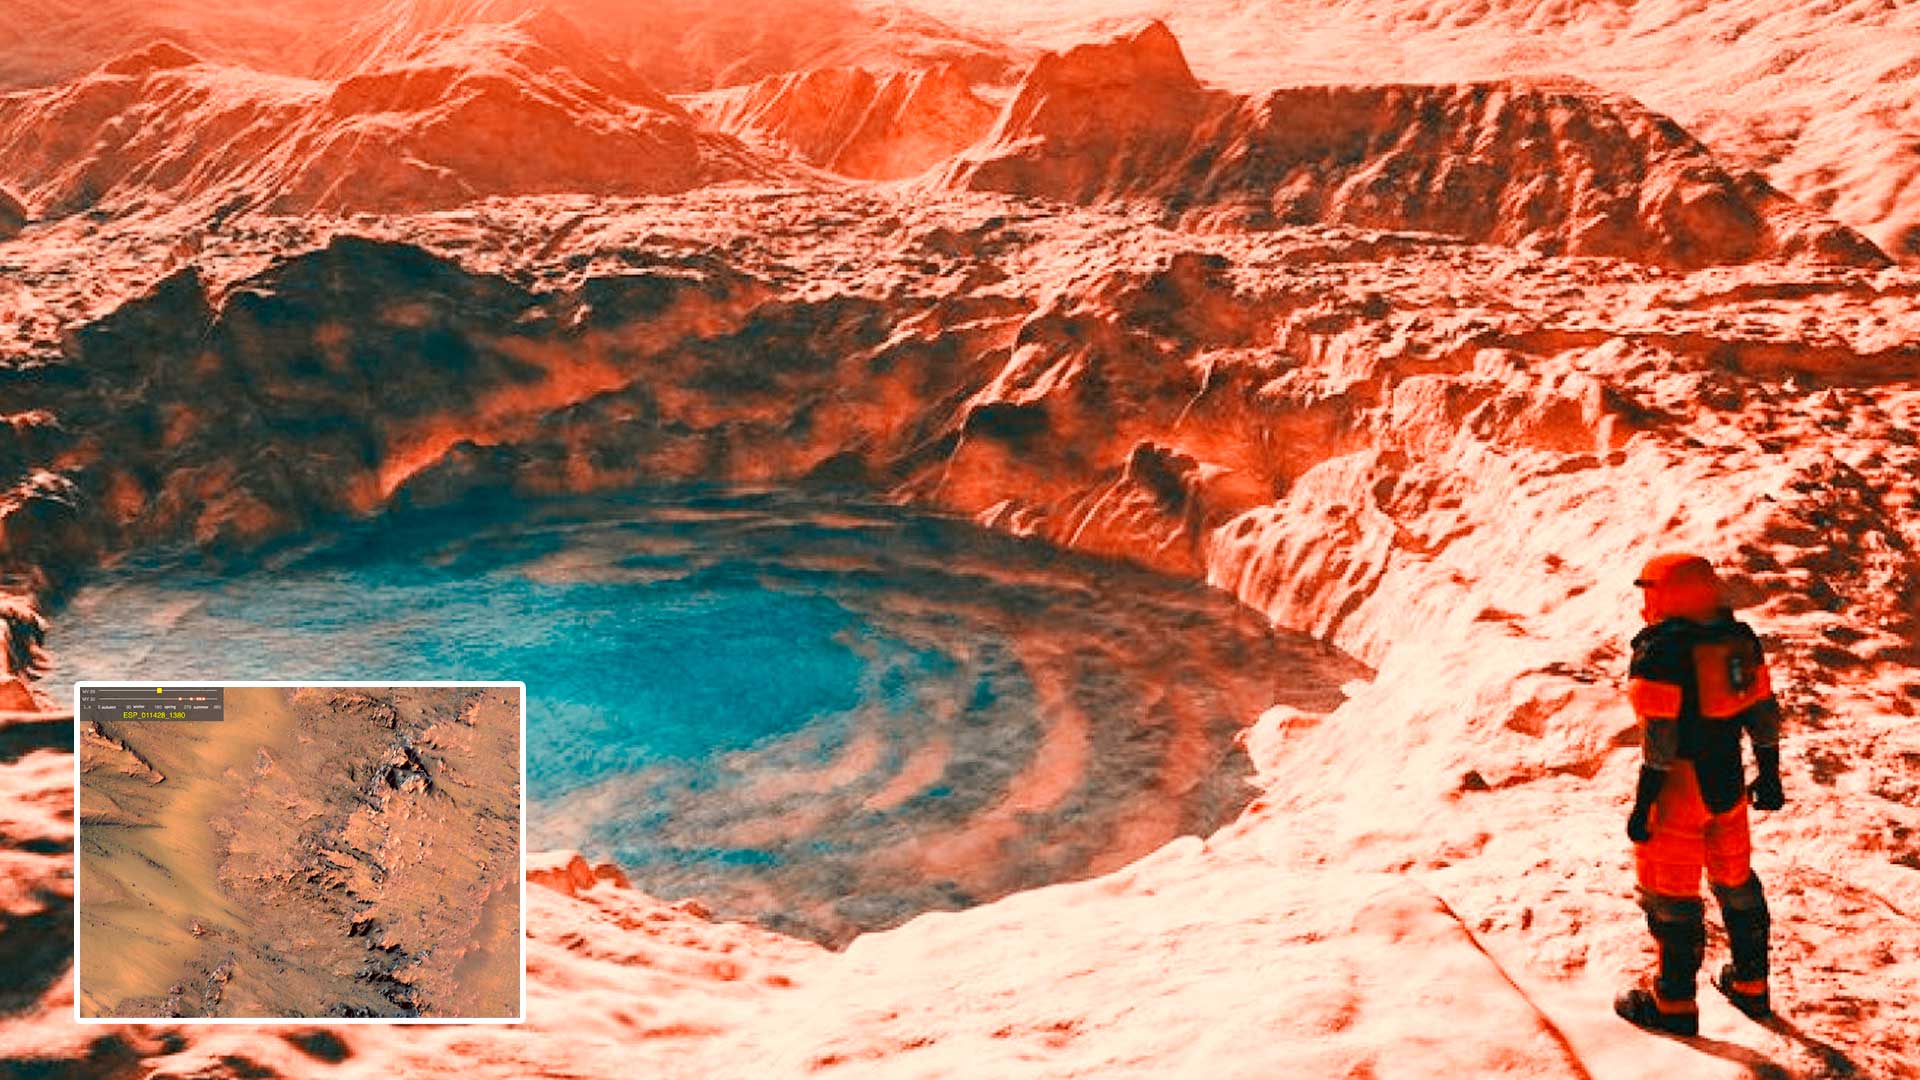 Marte, descubren cráteres que expulsan agua del subterráneo